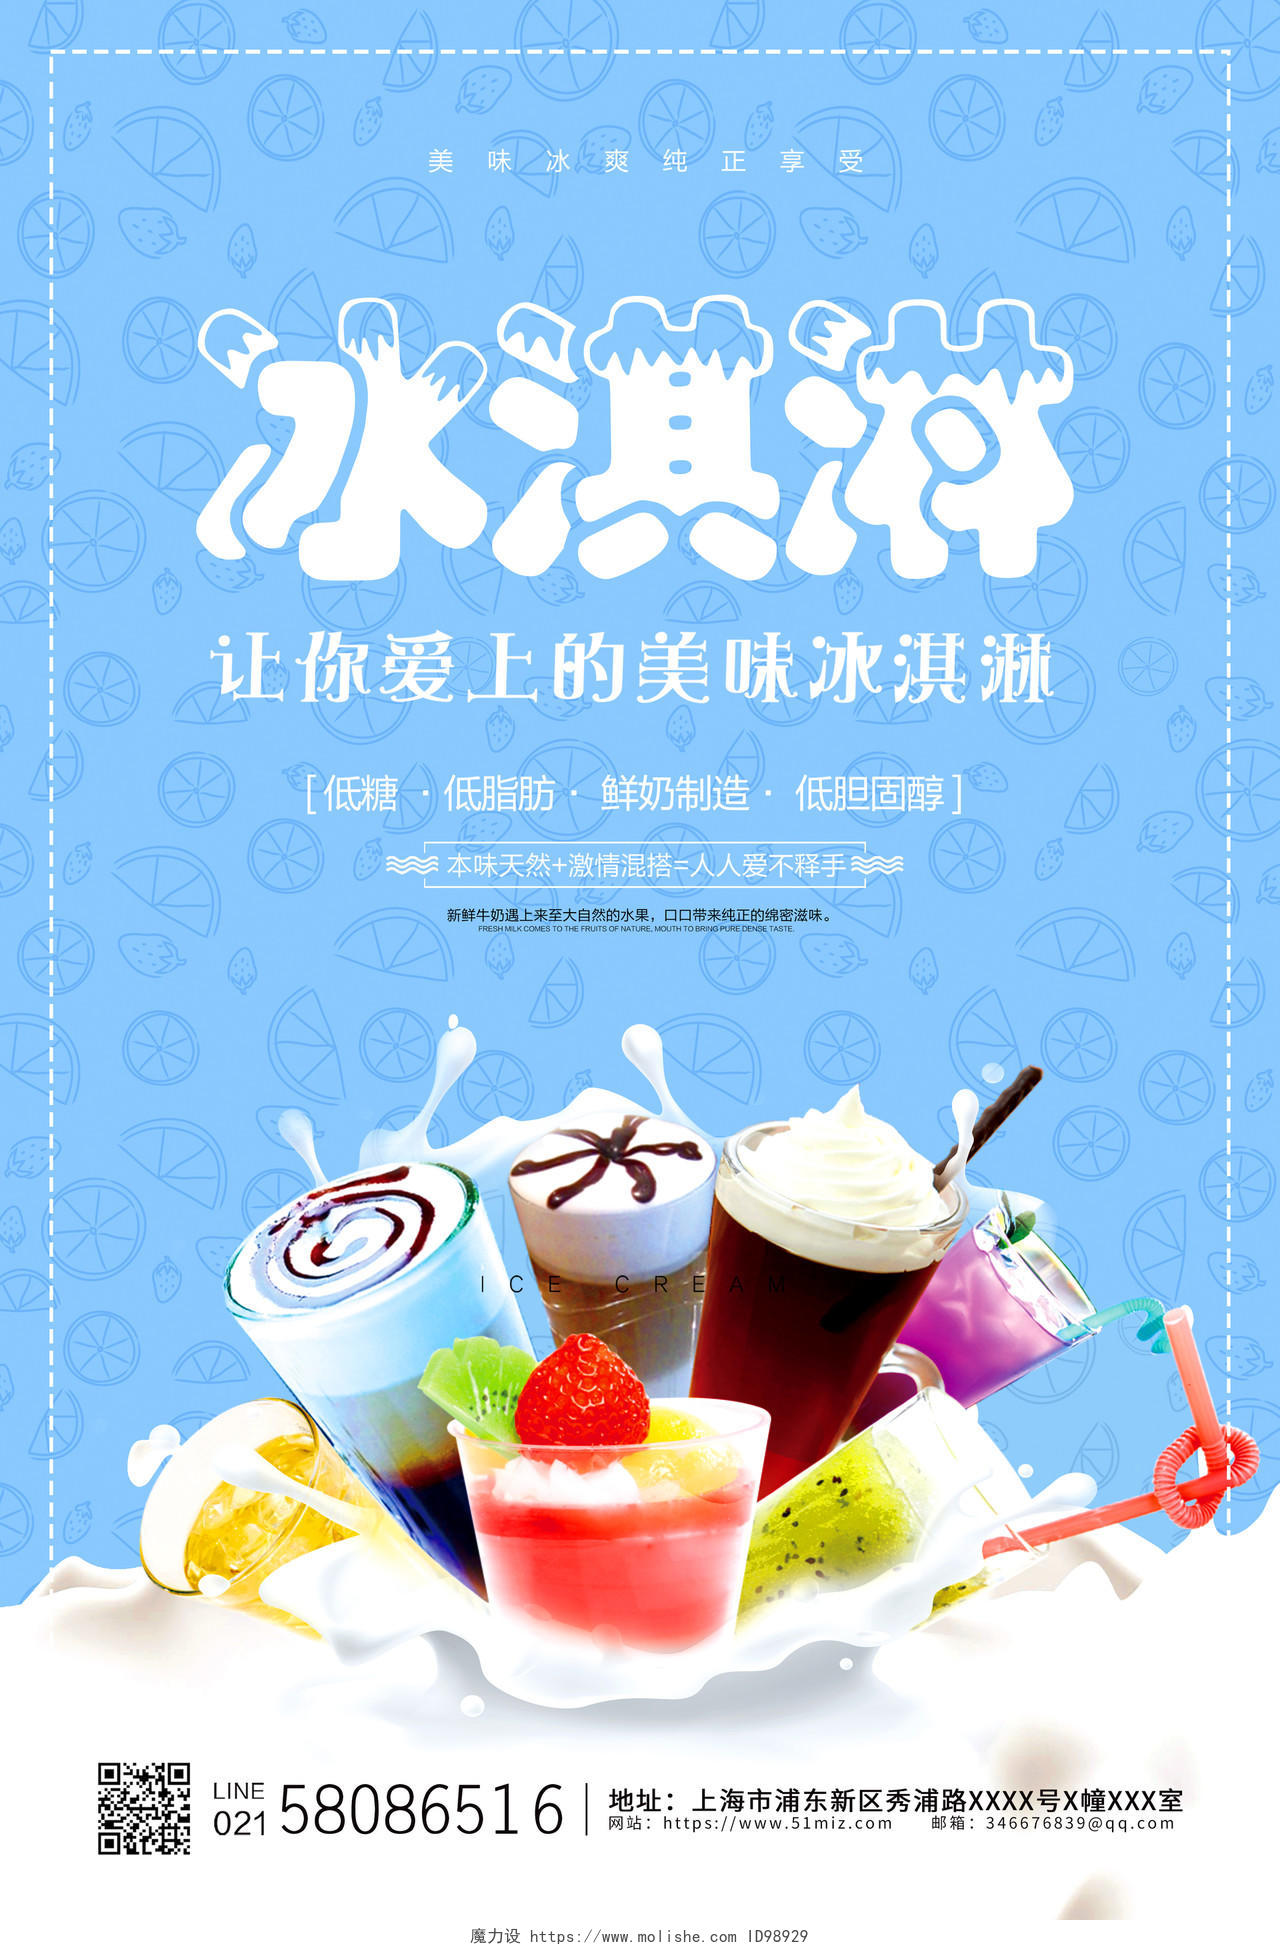 蓝色简约大气冰淇淋宣传促销海报设计夏天冰淇淋雪糕